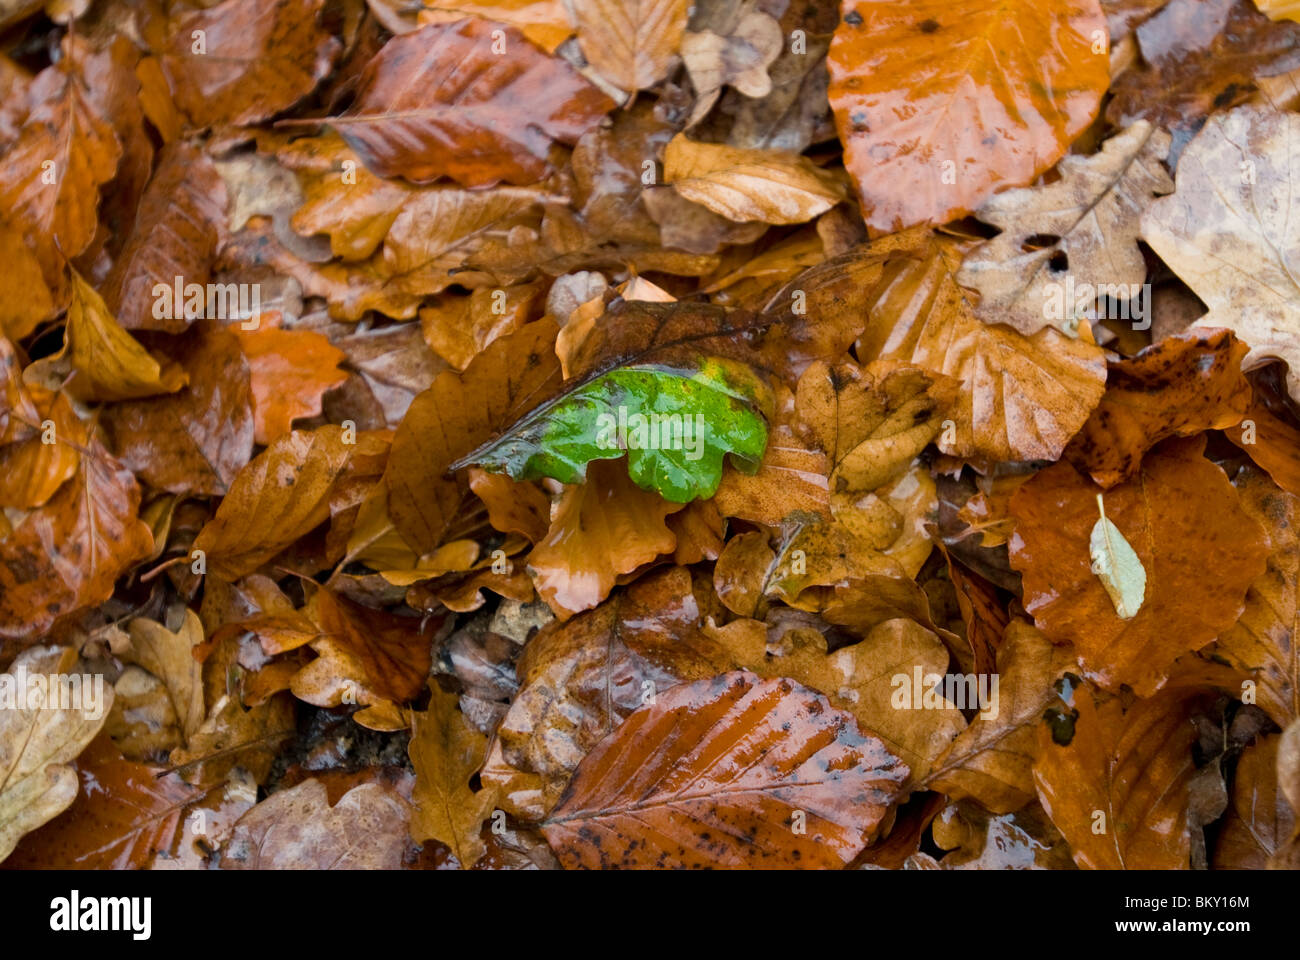 La hoja verde se asienta sobre mojado muriendo hojas marrones. Foto de stock